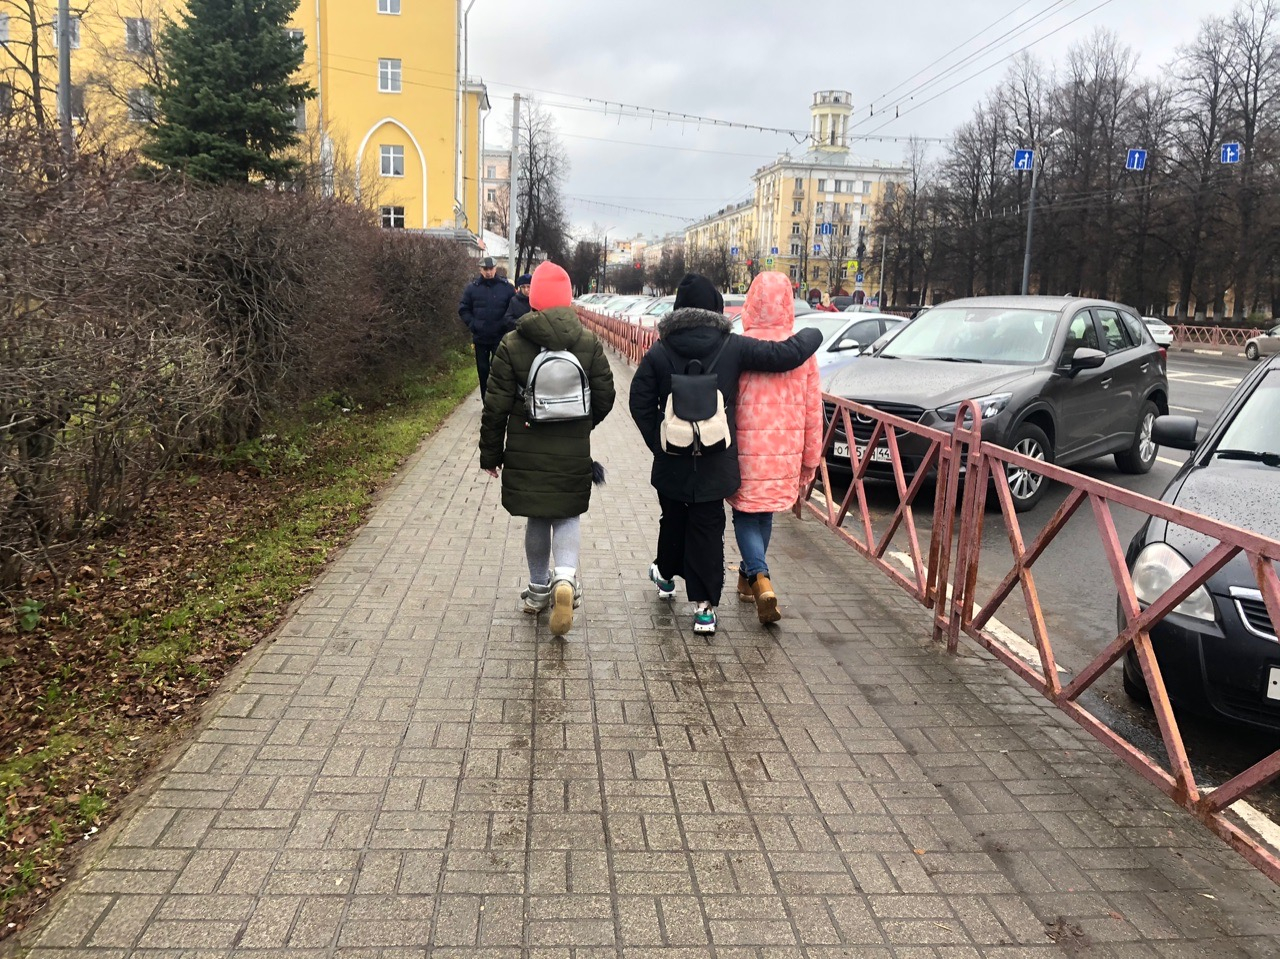 "Отменить субботы и физкультуру": что требуют родители нынешних школьников в Ярославле